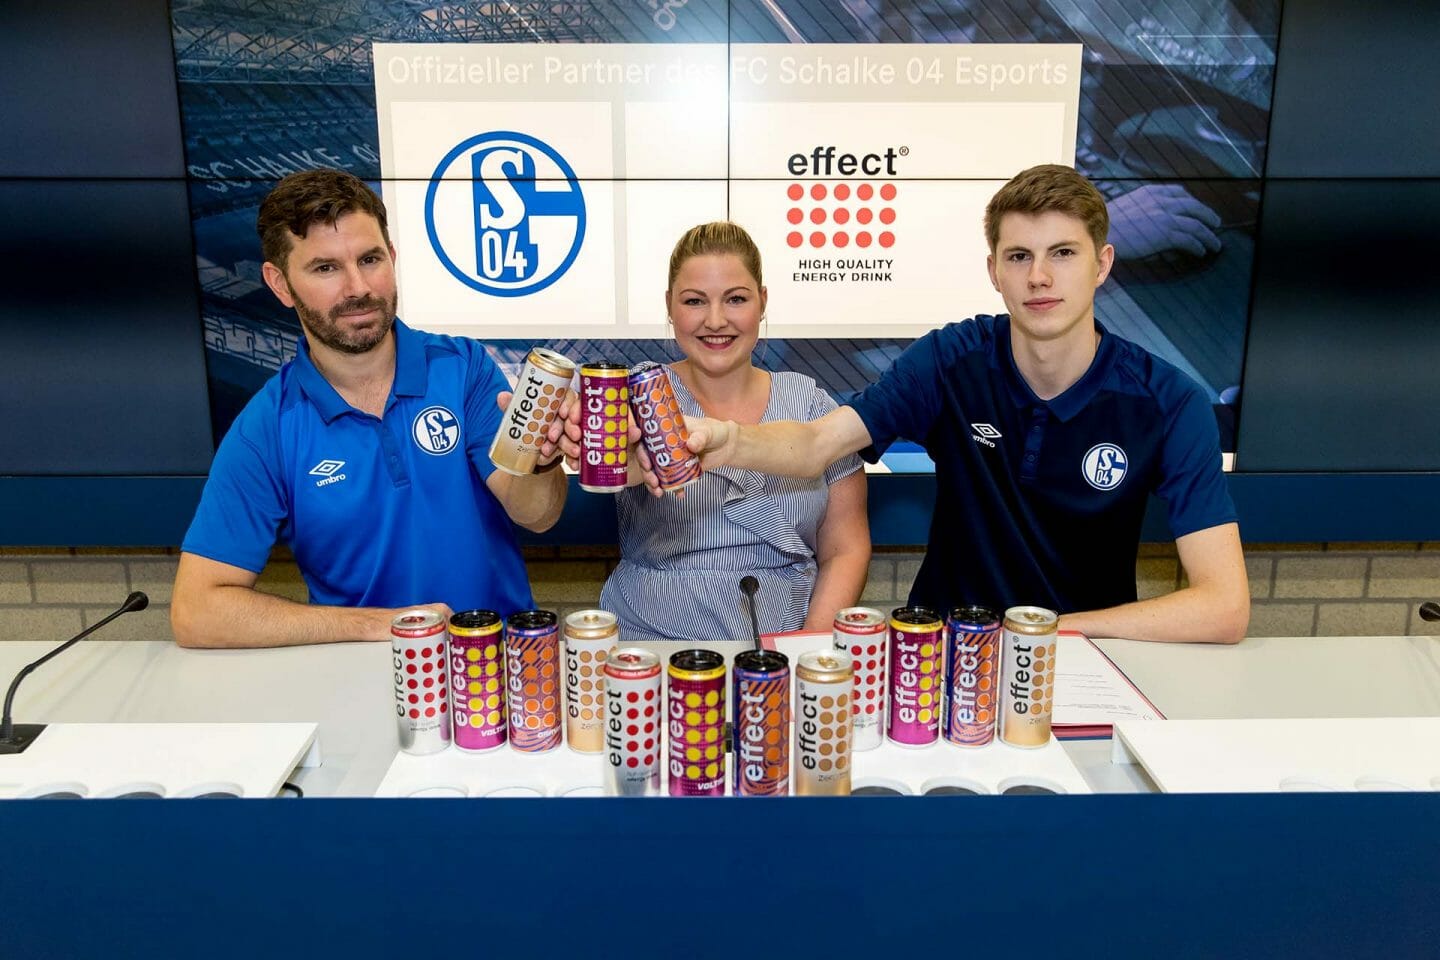 effect ist offizieller Partner des FC Schalke 04 Esports